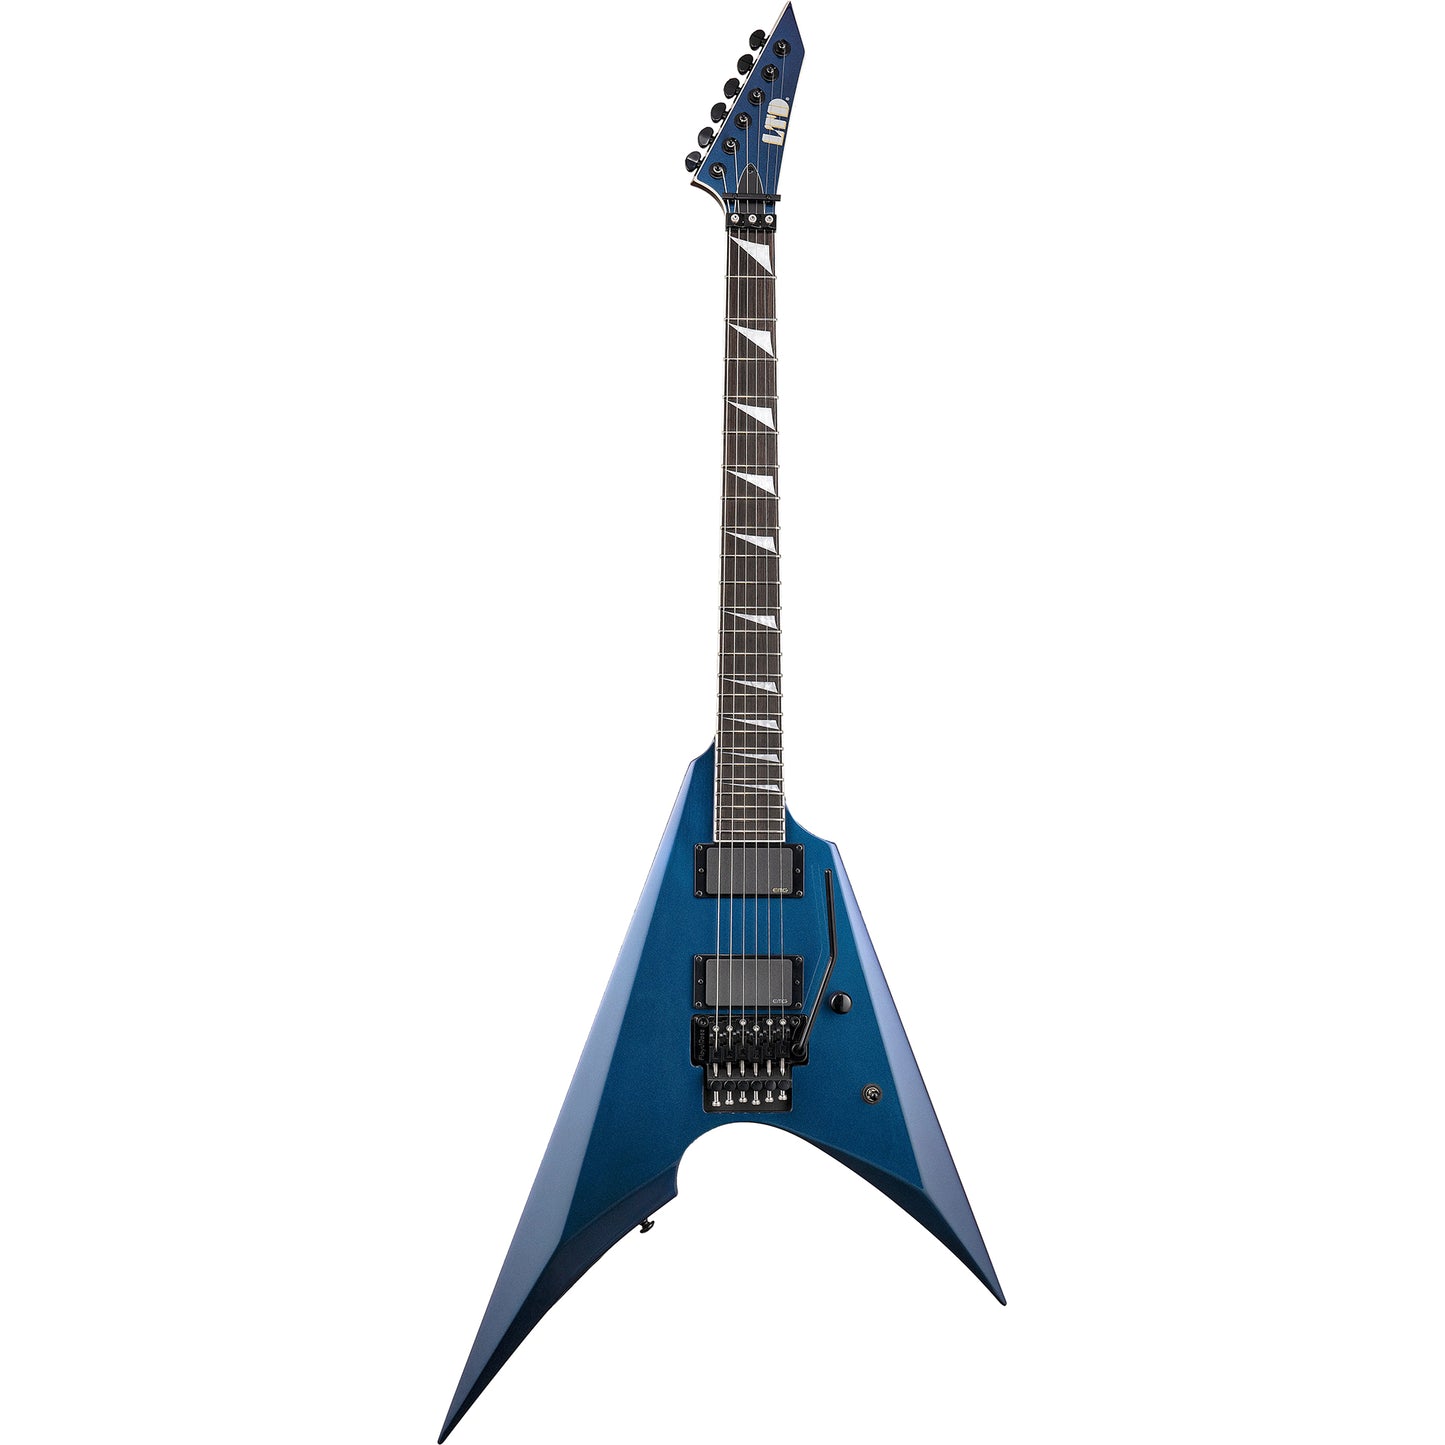 ESP LTD Arrow-1000 Electric Guitar, Violet Andromeda